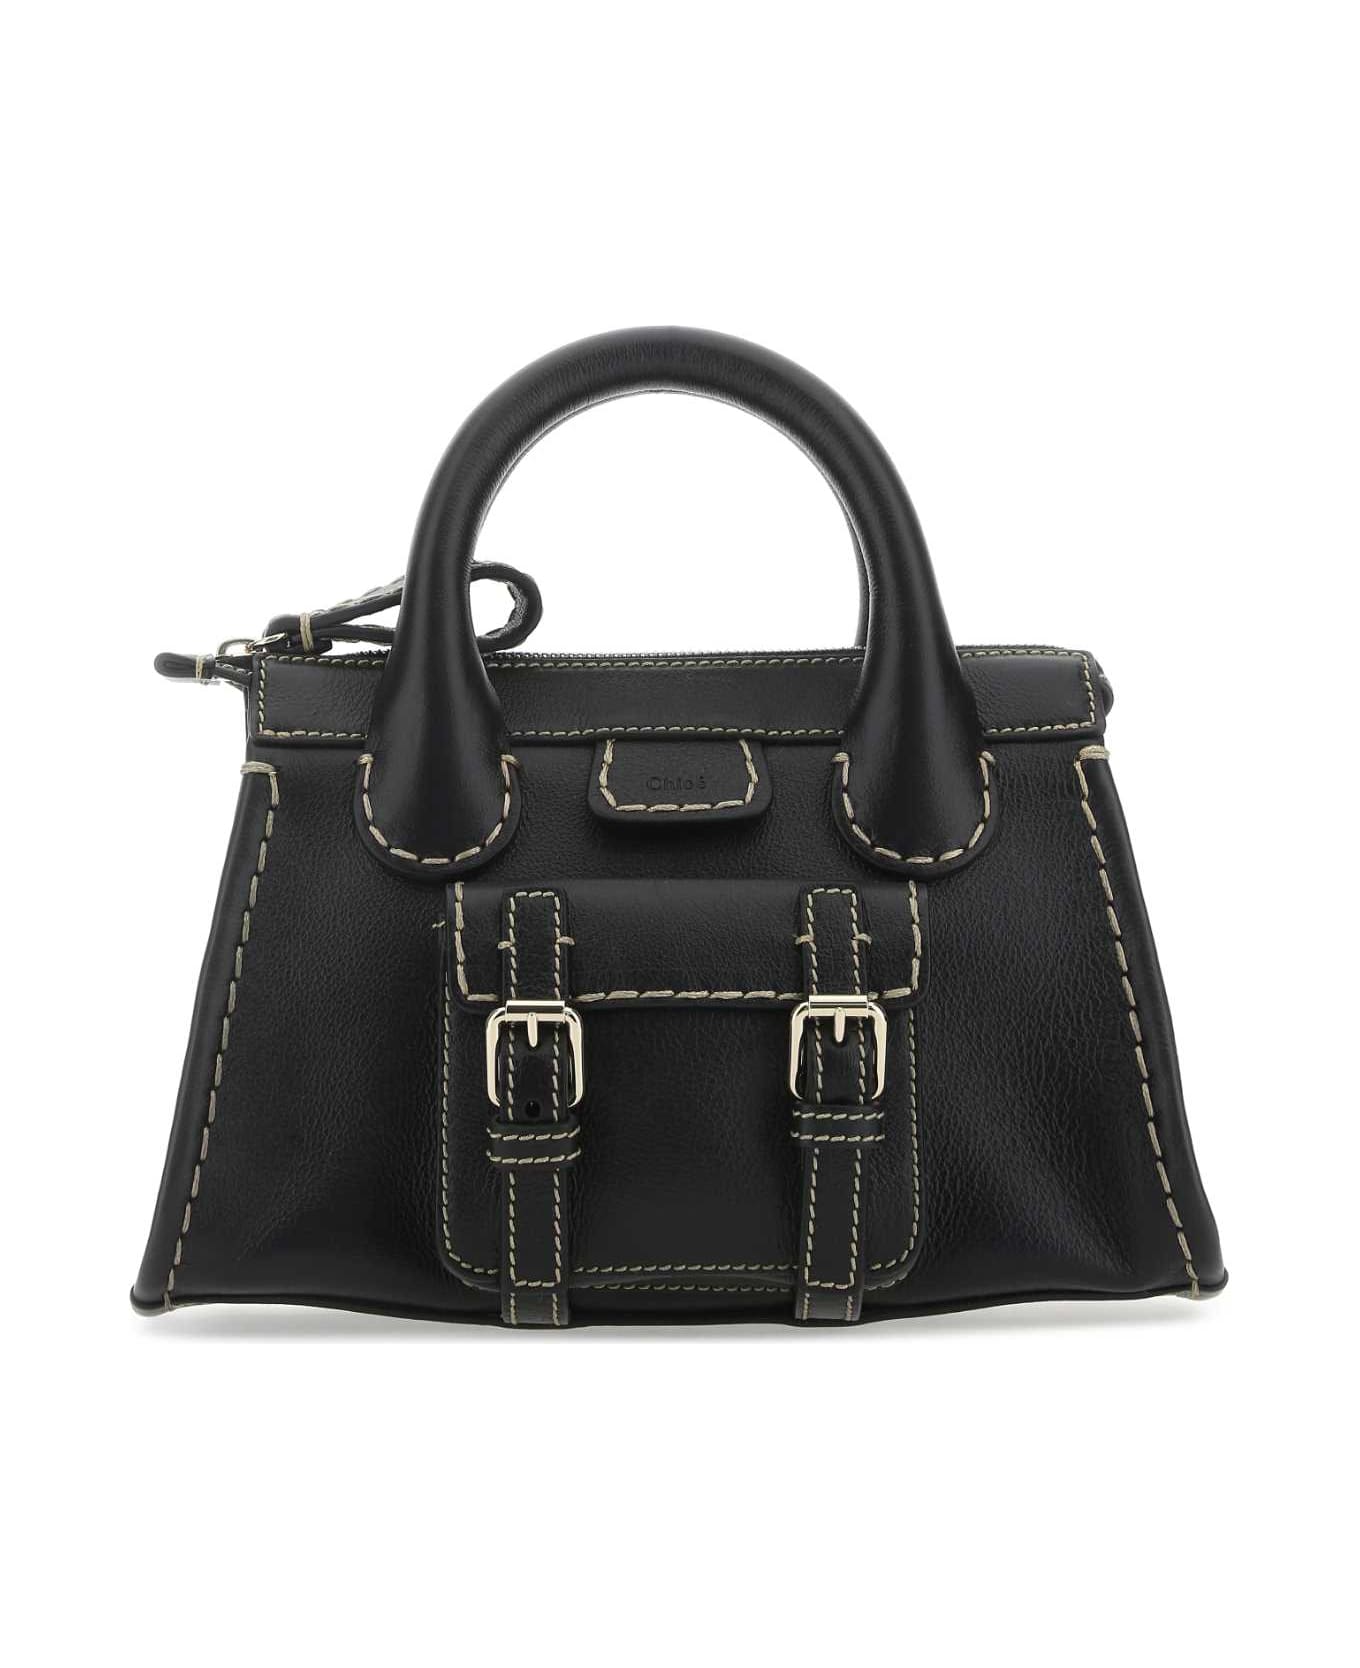 Chloé Black Leather Mini Edith Handbag - 001